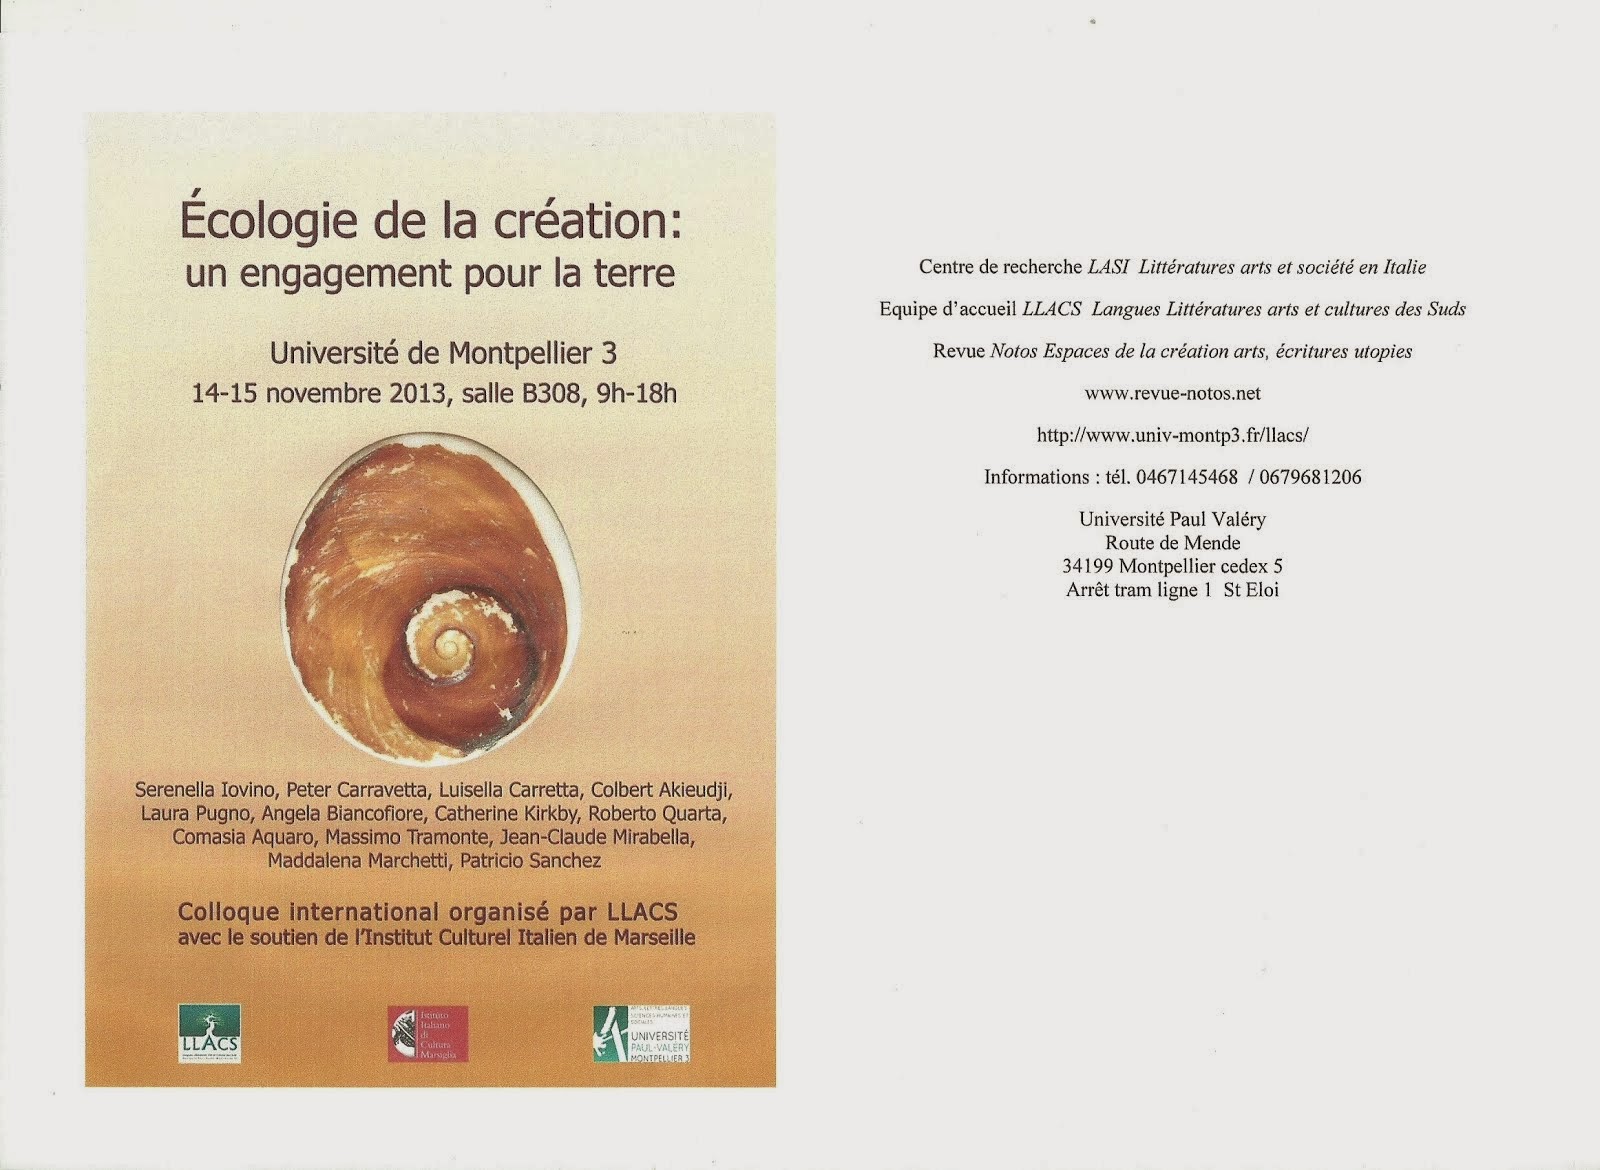 ECOLOGIE DE LA CREATION: UN ENGAGEMENT POUR LA TERRE, UNIVERSITE PAUL VALERY III - France-2013